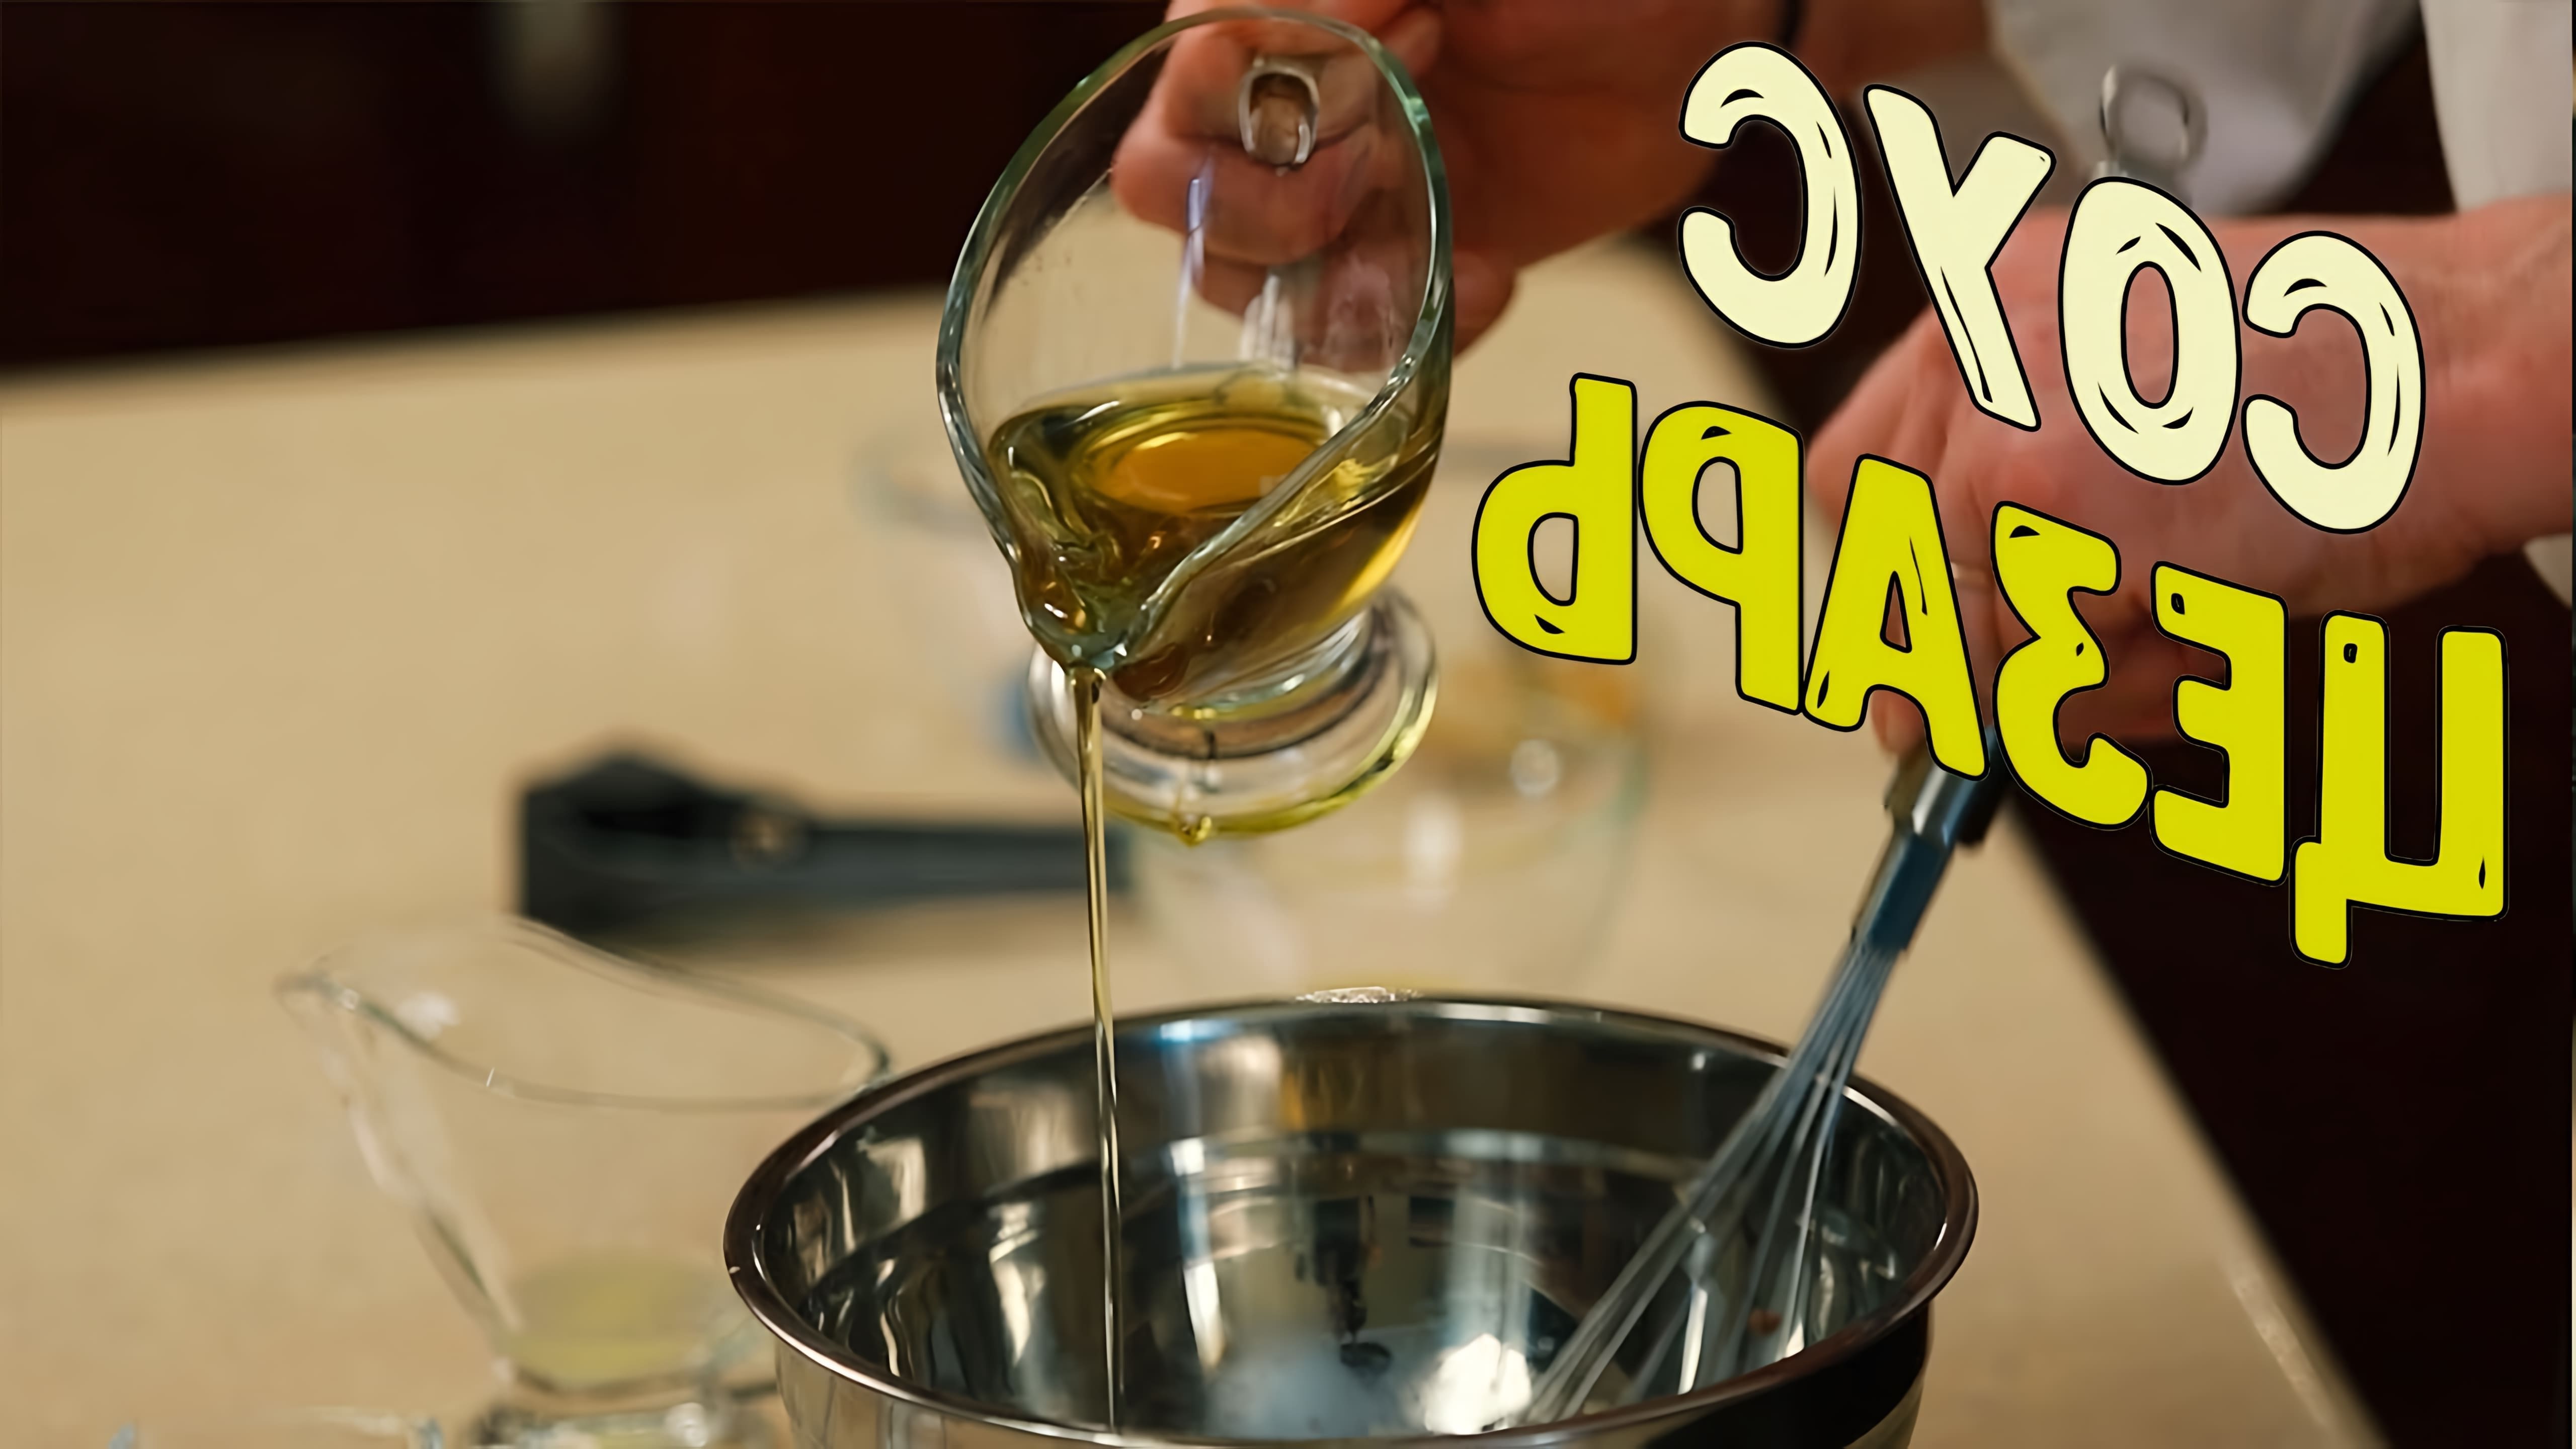 В этом видео демонстрируется процесс приготовления соуса "Цезарь" с использованием необычного ингредиента